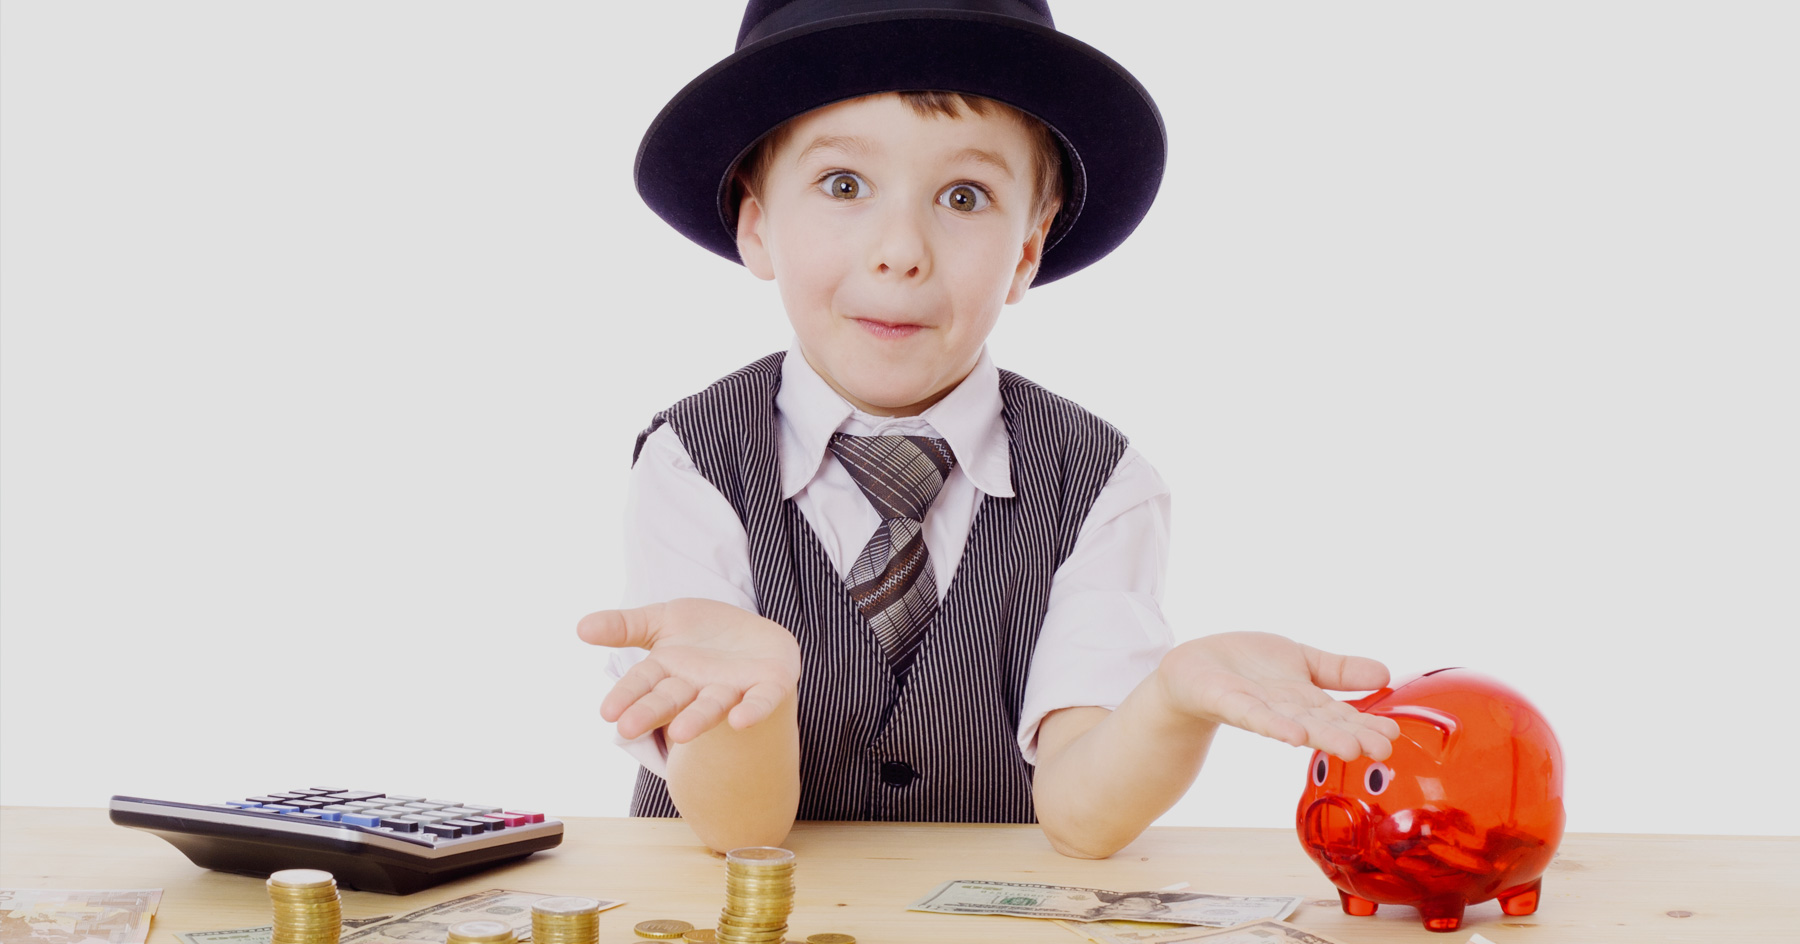 6 финансовых советов, которые пригодятся вашим детям